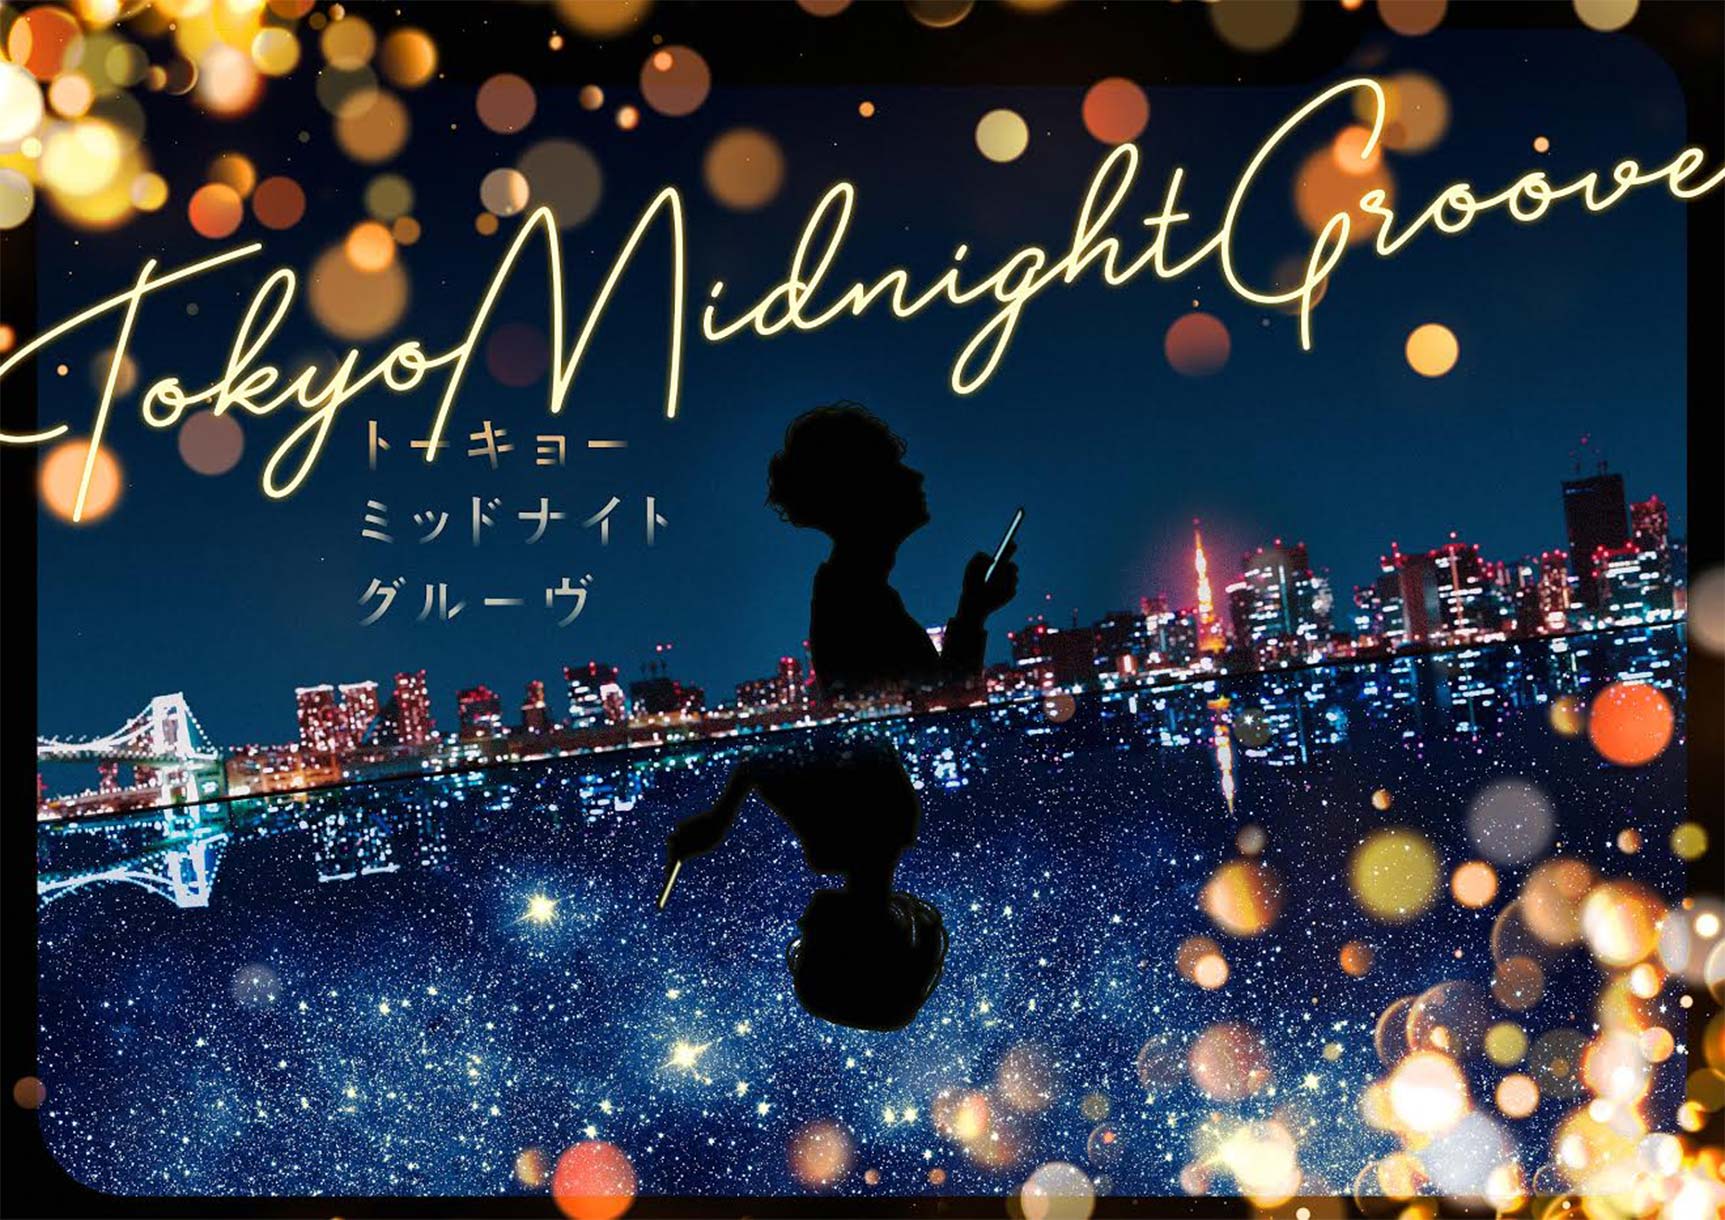 7月26日より上映！『Tokyo Midnight Groove』に制作協力しました